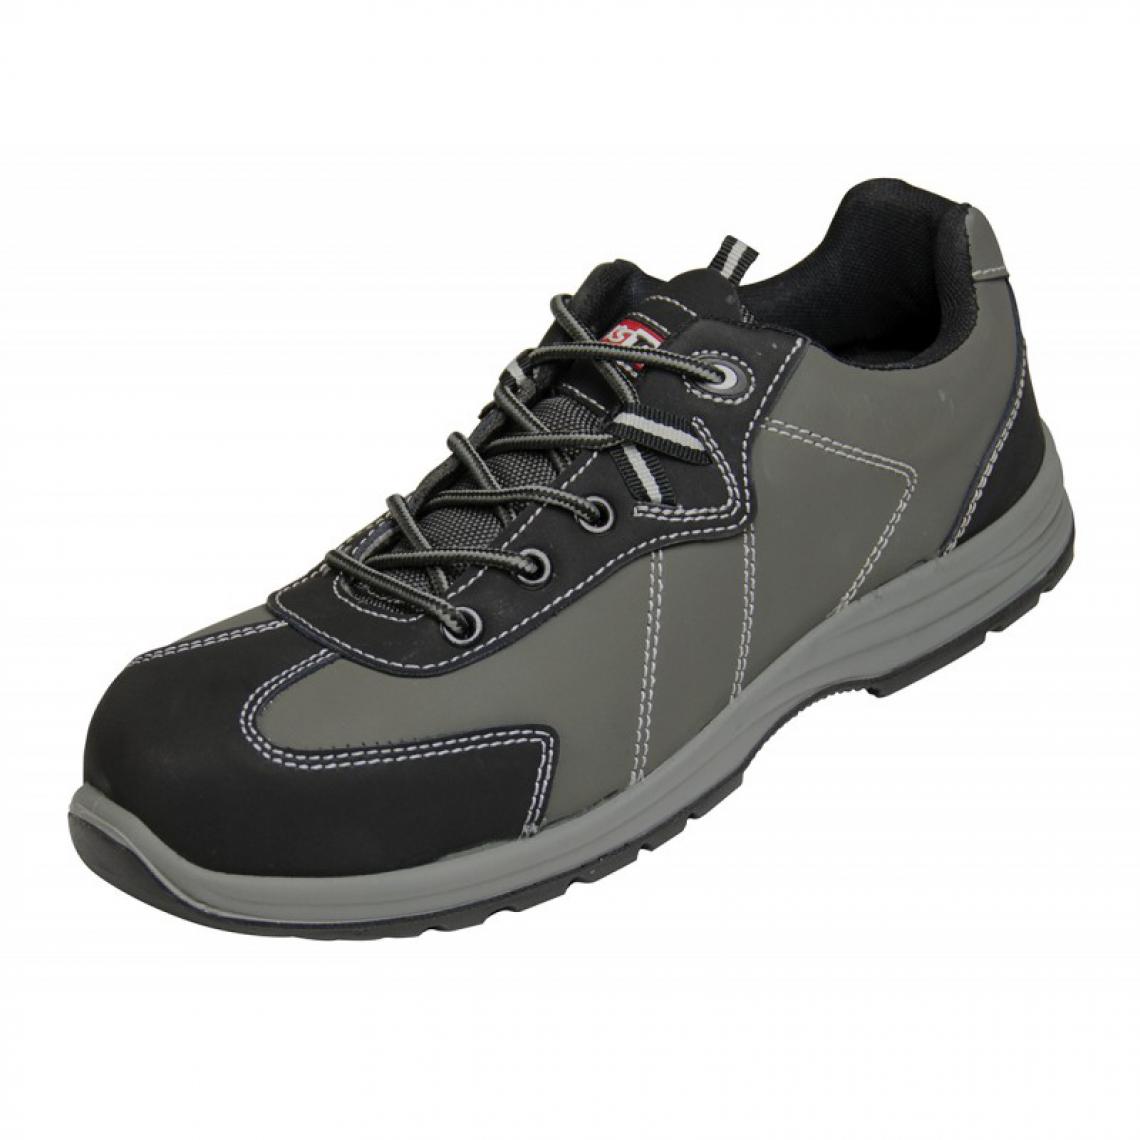 Kstools - Chaussures de sécurité KSTOOLS Couleur grise taille 41 - Equipement de Protection Individuelle